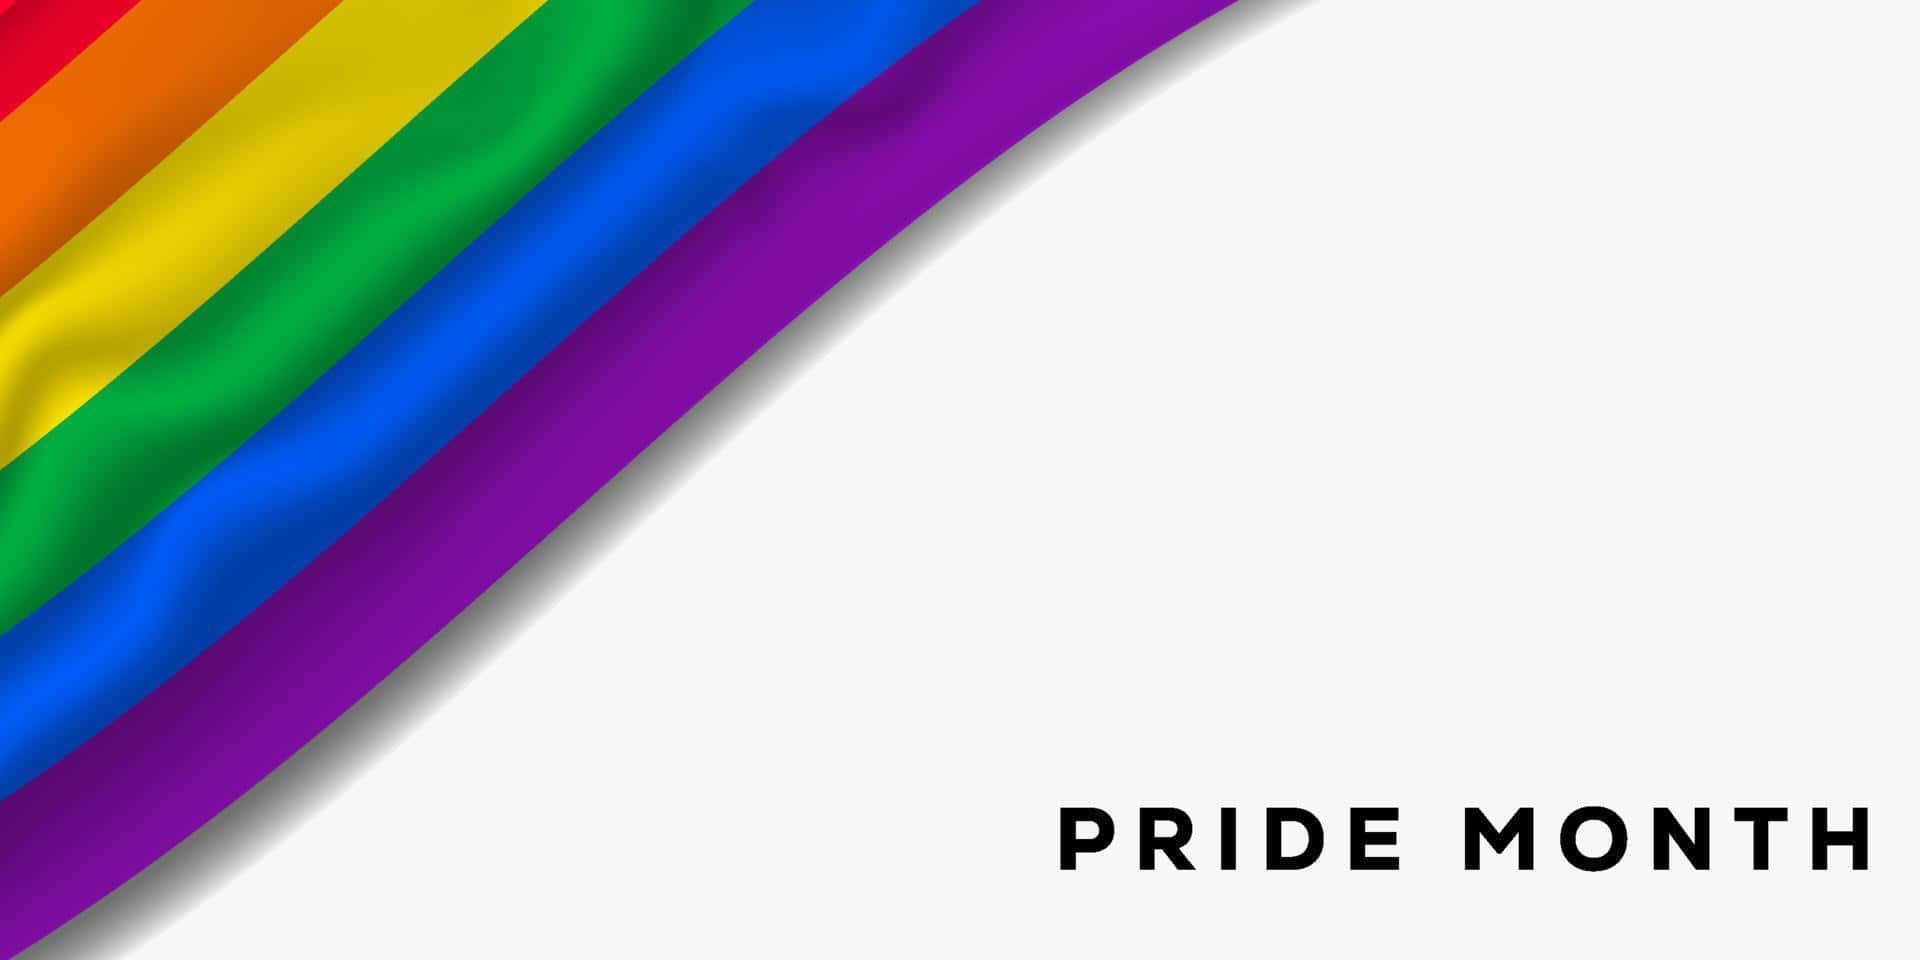 Unsimbolo Di Accettazione E Inclusività, Questa Colorata Bandiera Arcobaleno Dell'orgoglio Sventola Nella Brezza Dell'uguaglianza E Dell'amore.